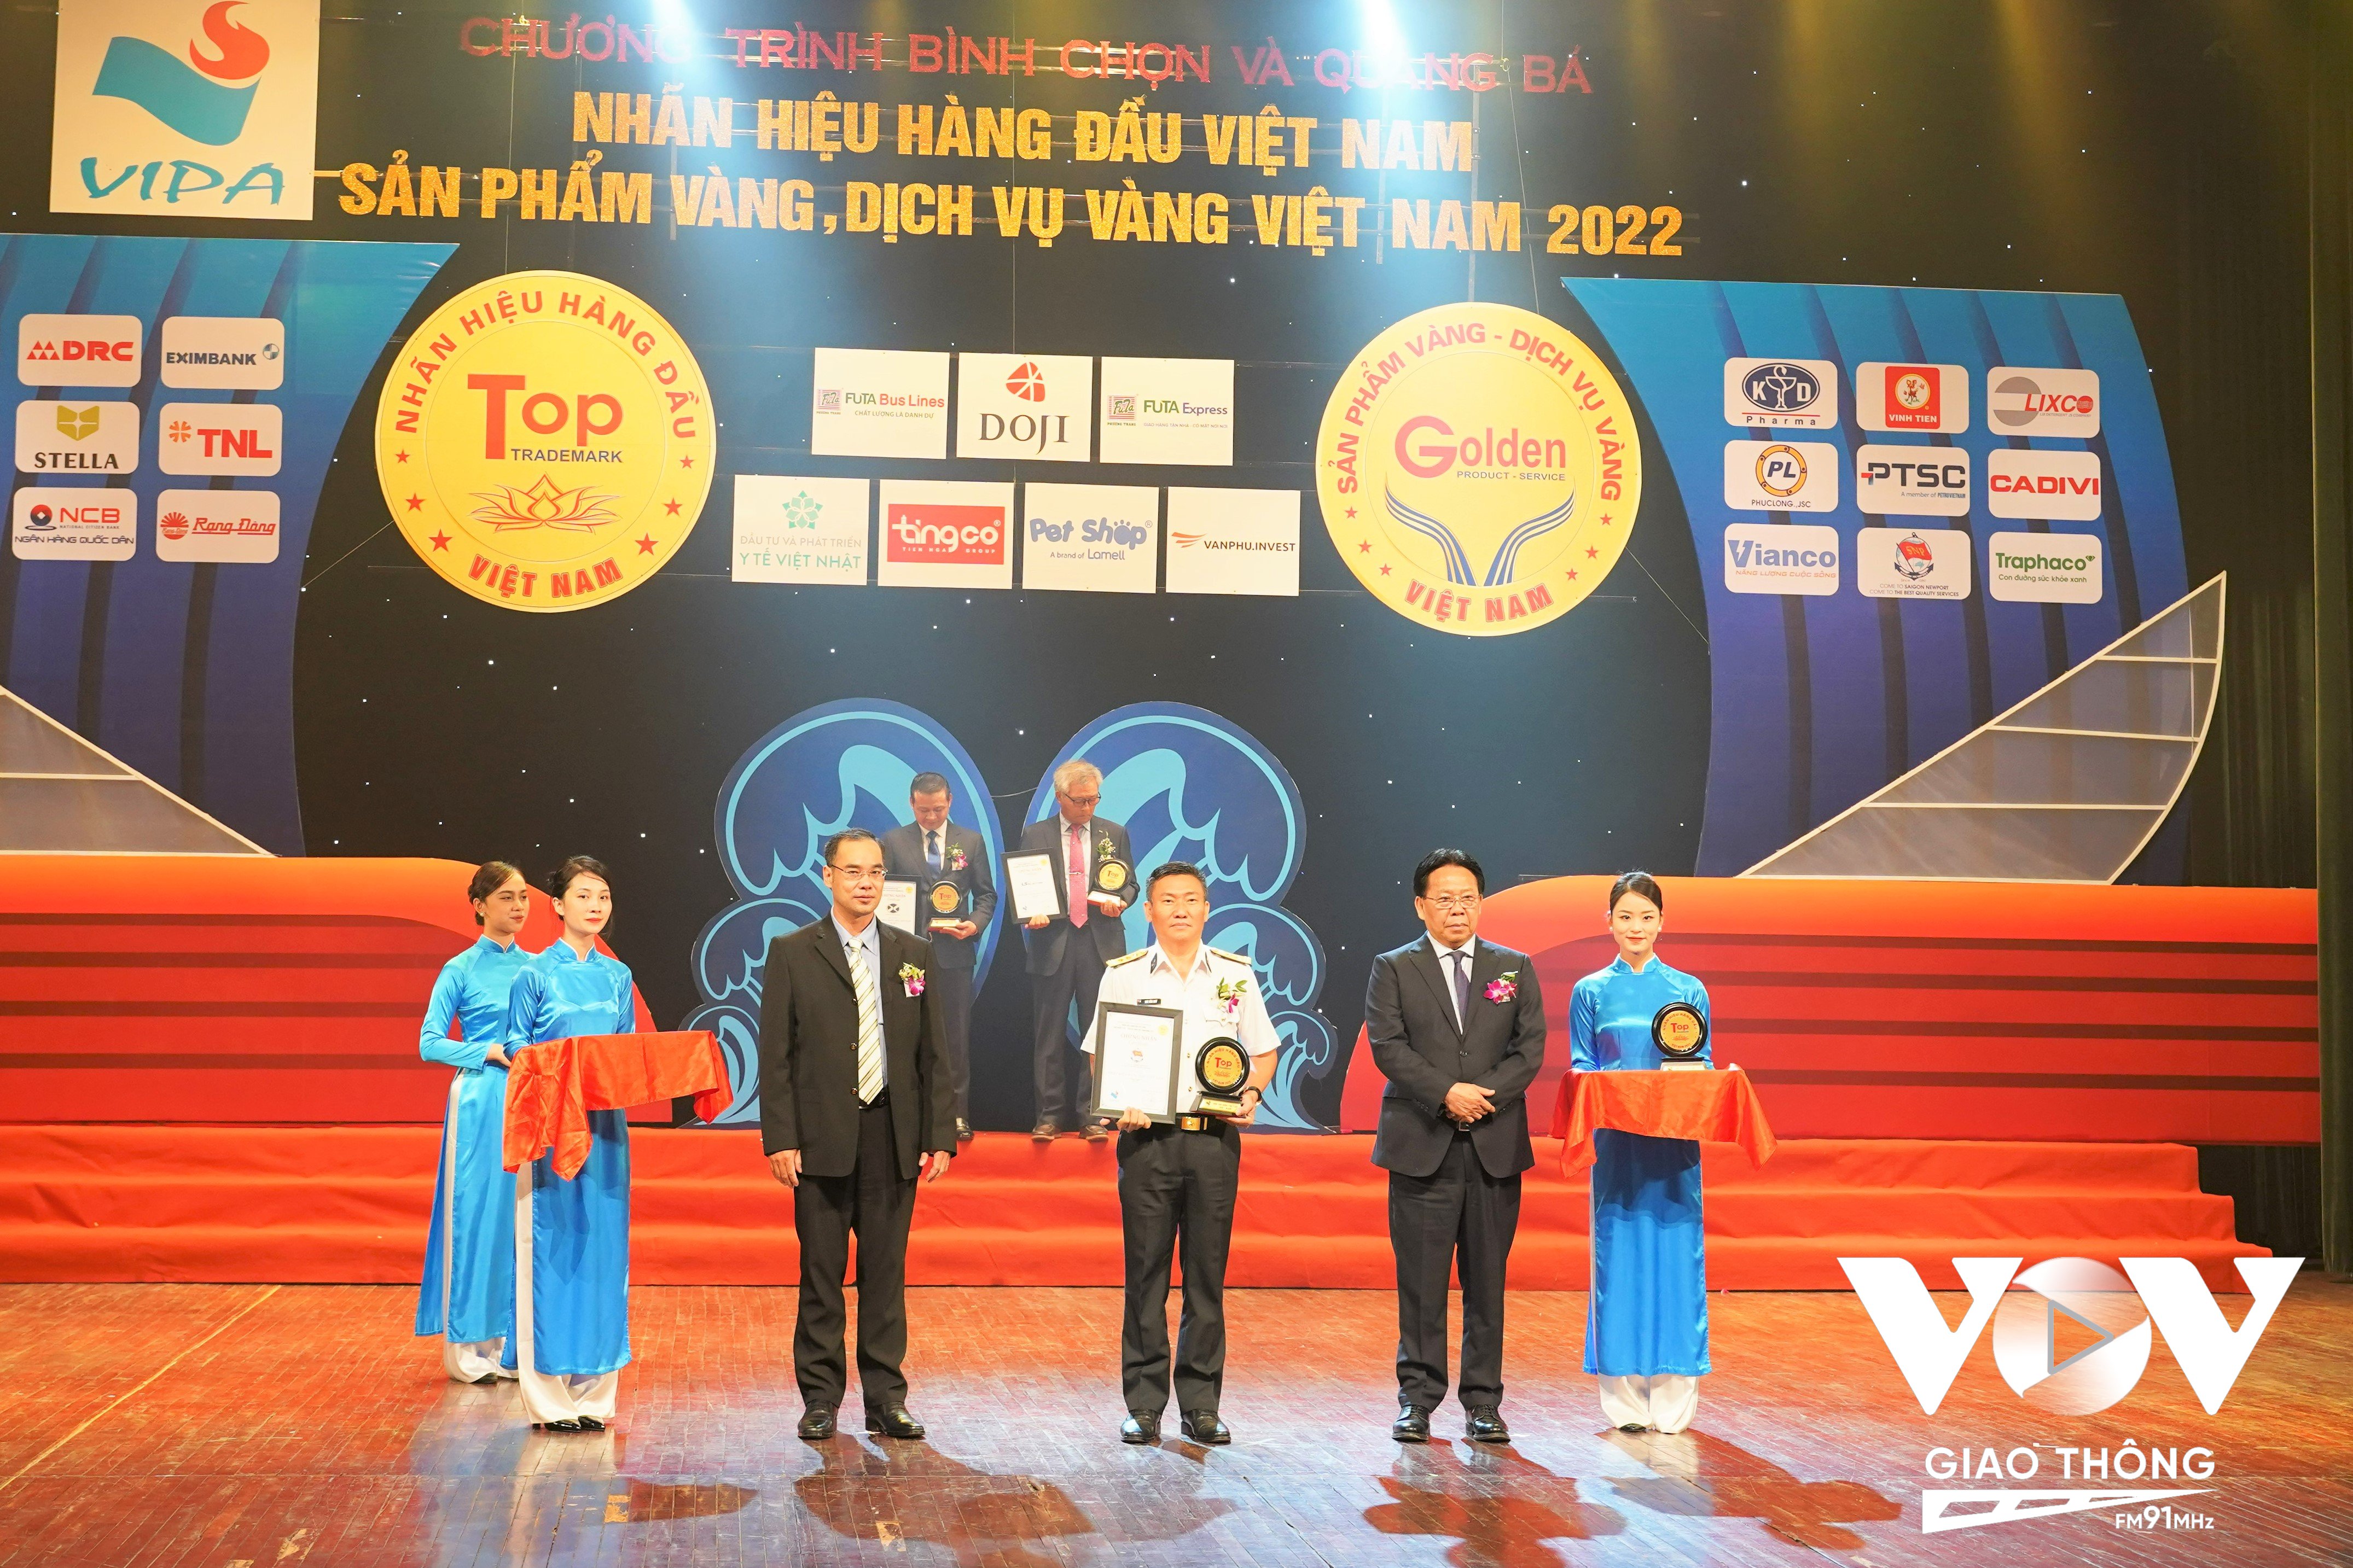 Đại diện Tổng công ty Tân Cảng Sài Gòn - Thượng tá Bùi Văn Quỳ, Phó Tổng giám đốc nhận “Nhãn hiệu hàng đầu Việt Nam năm 2022”.